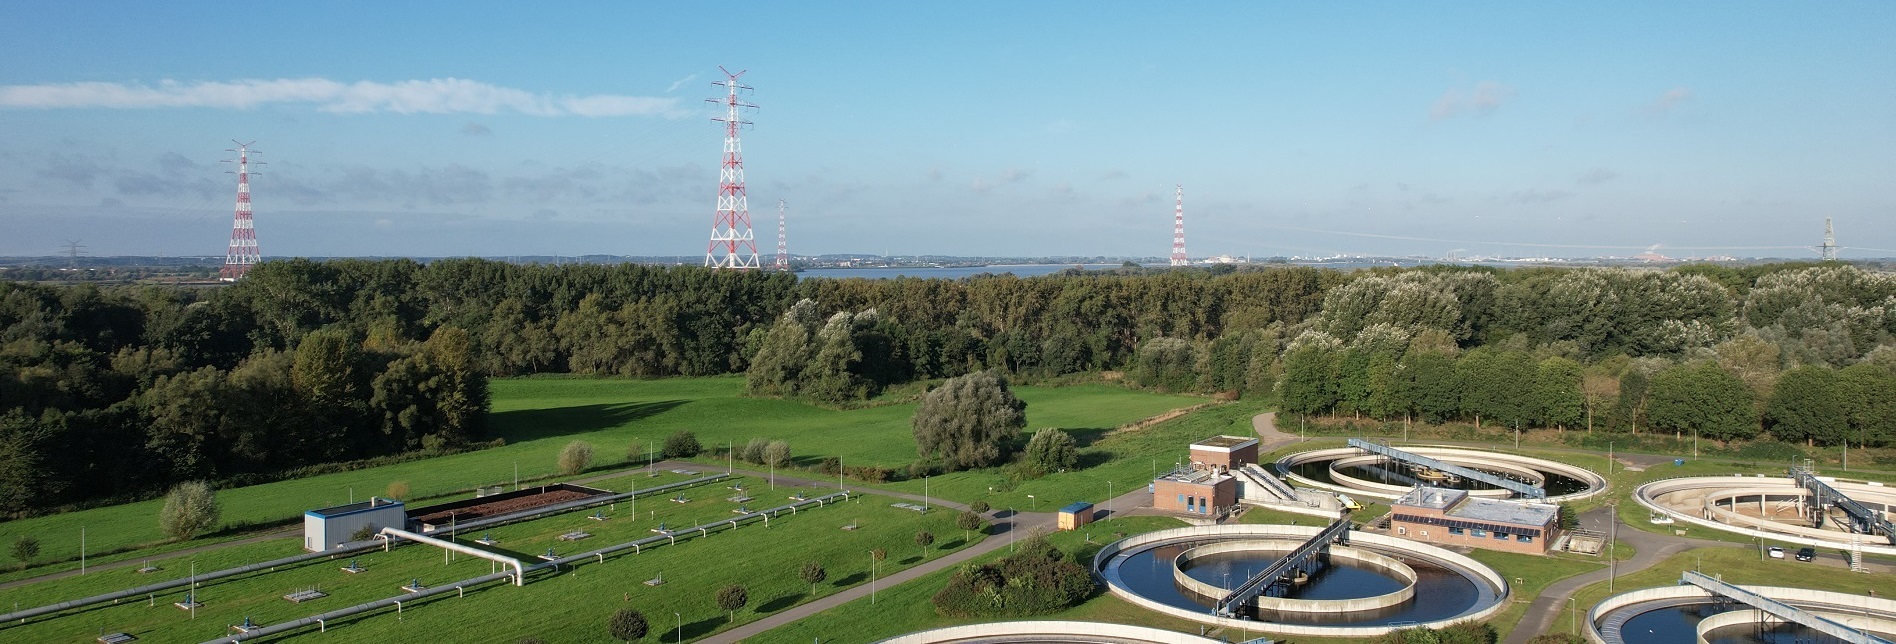 Luftbild der Kläranlage Hetlingen, im Hintergrund sieht am die Elbe.